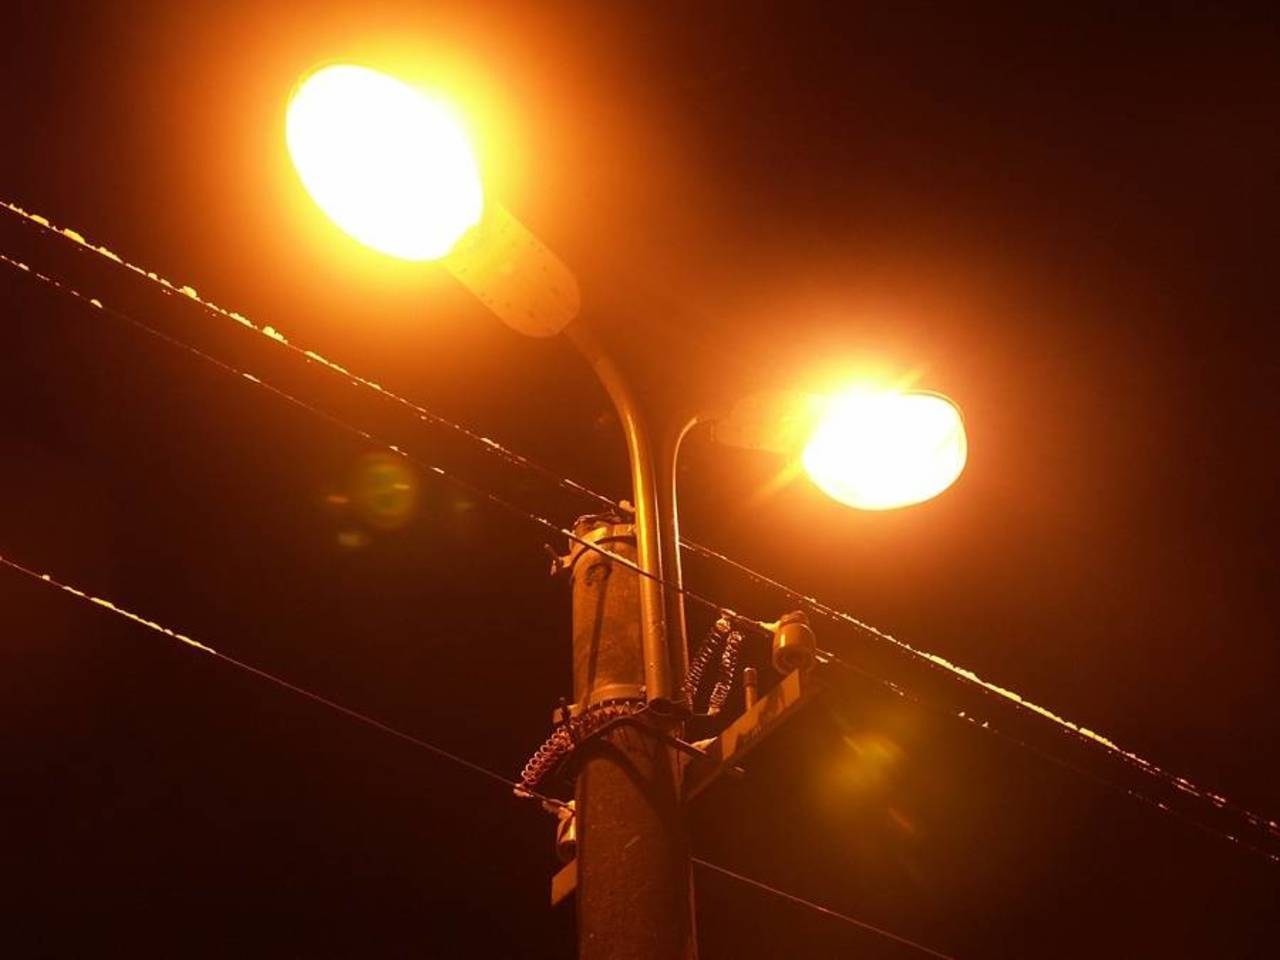 Брянские чиновники рапортуют об улучшении уличного освещения, а жители пока не видят перемен